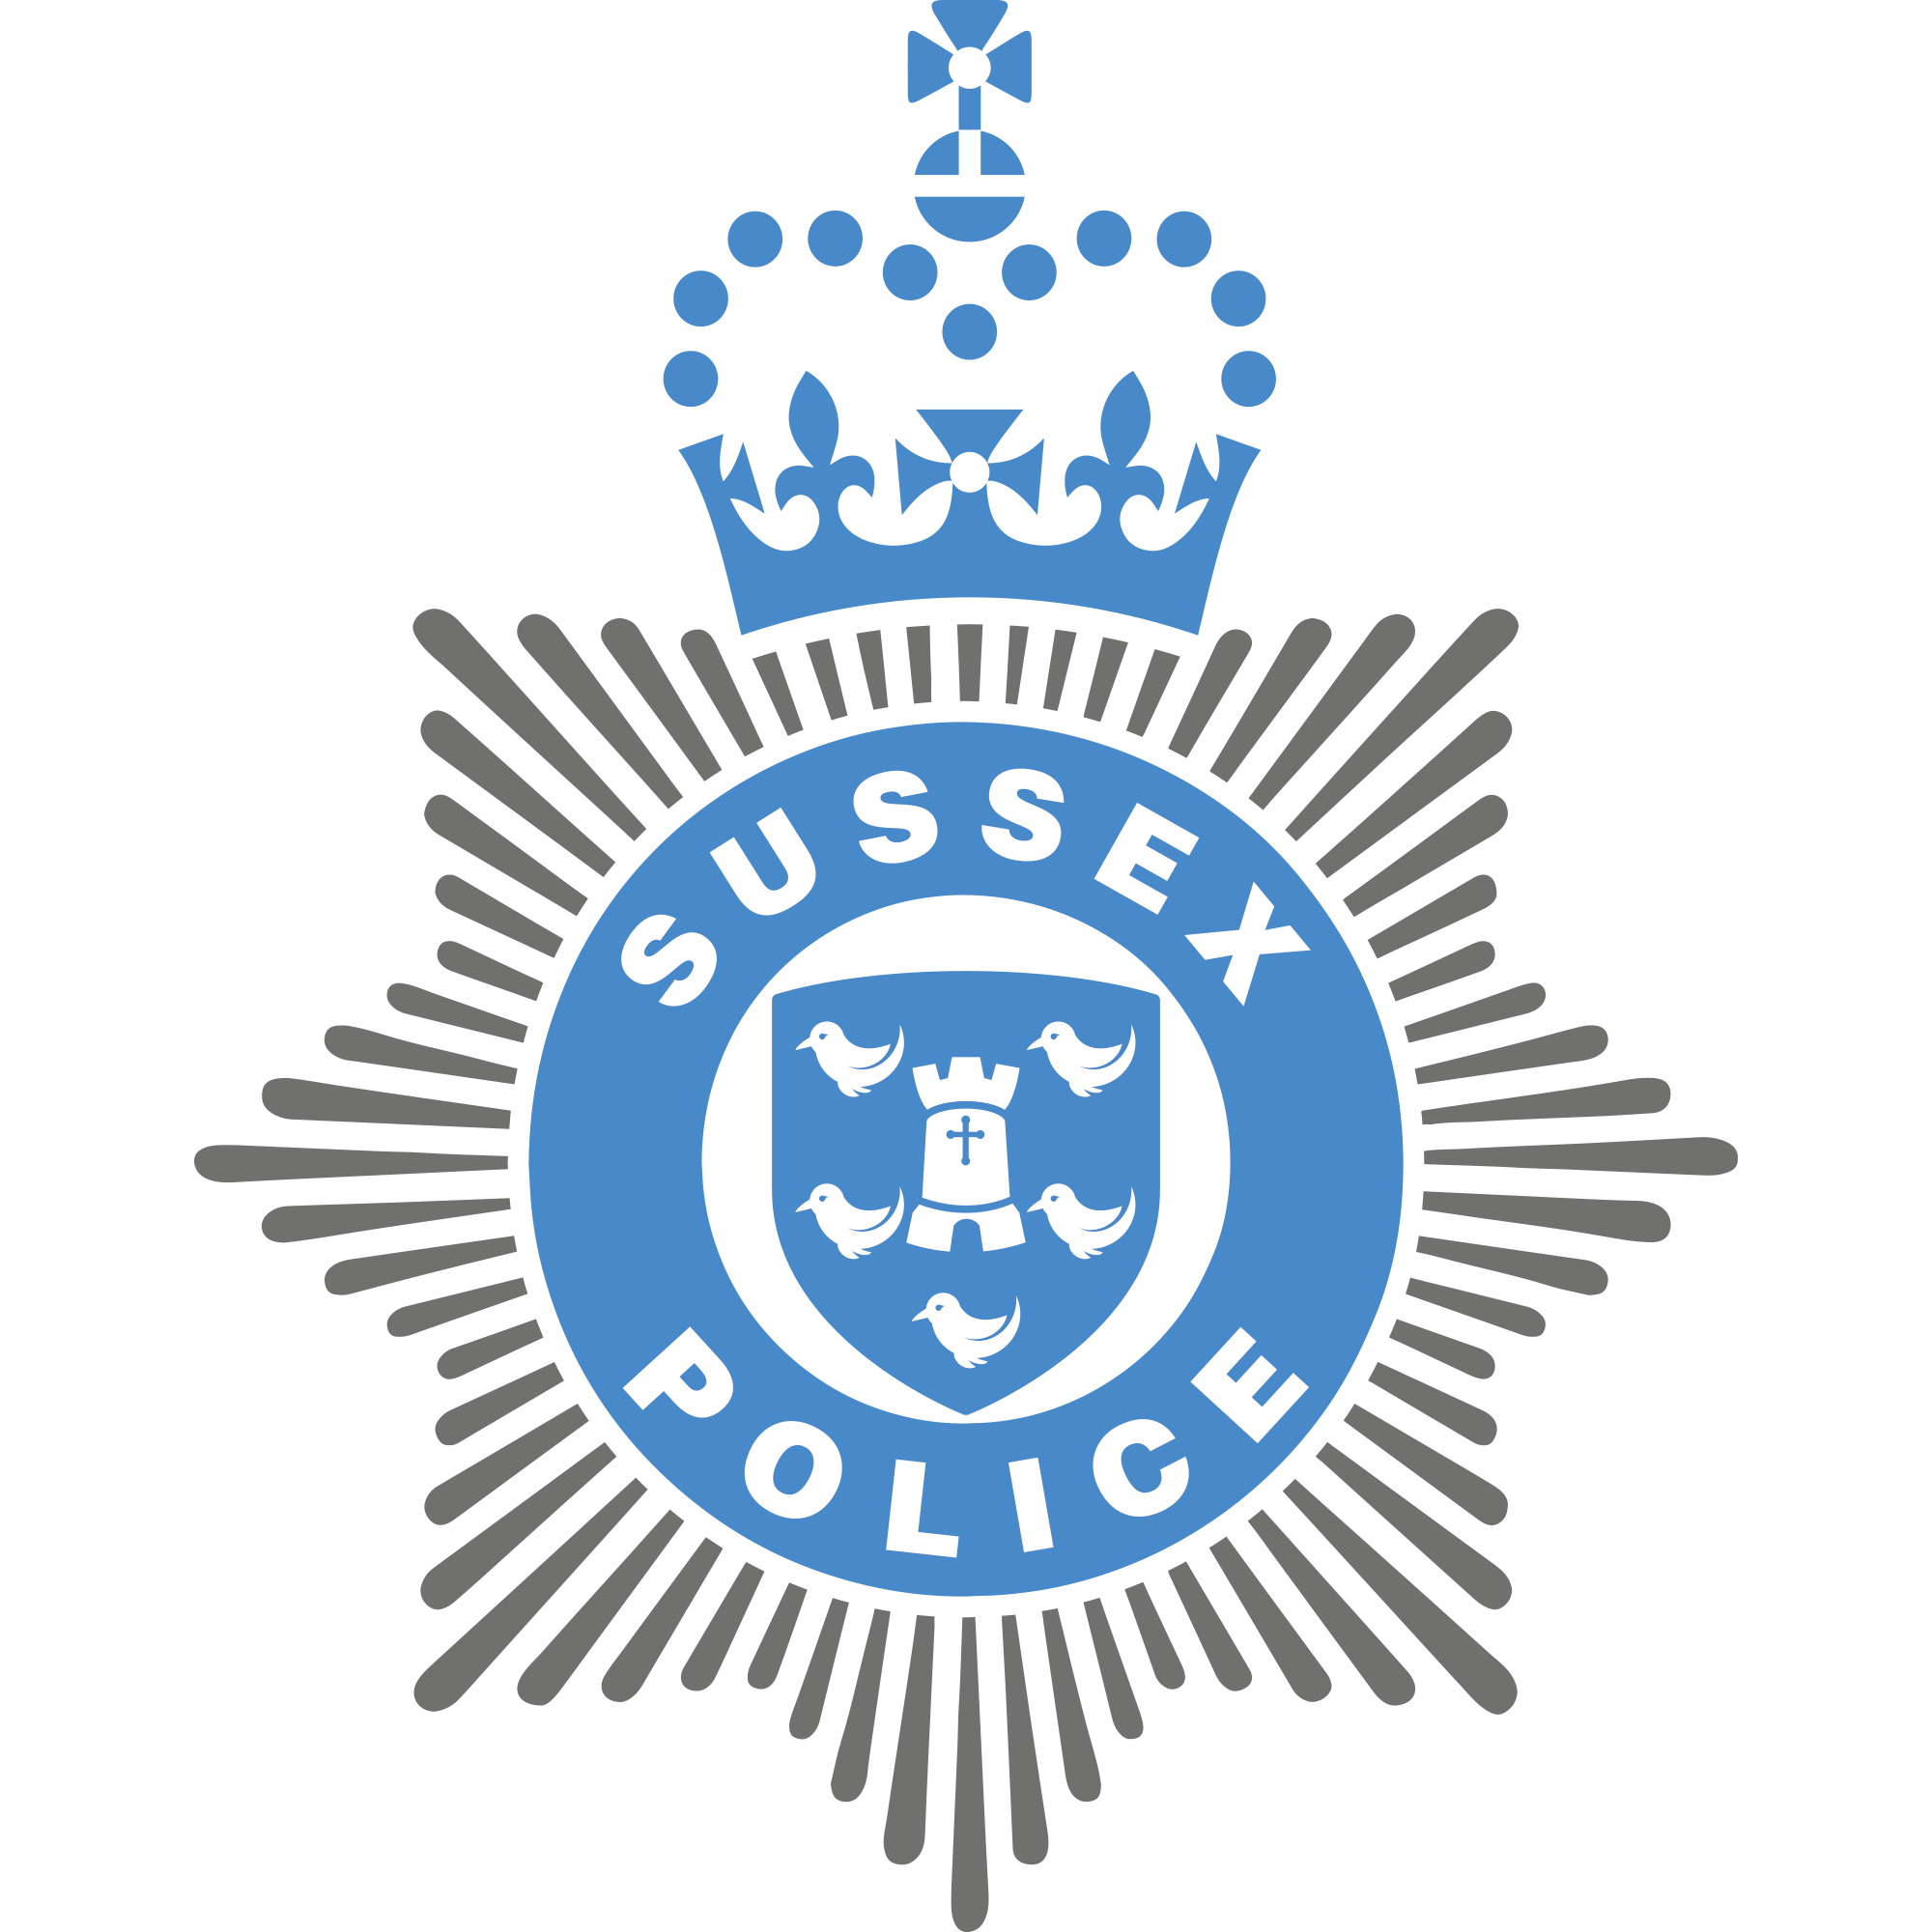 Ridgewood Logo - Police to target Ridgewood with anti-social behaviour patrols ...